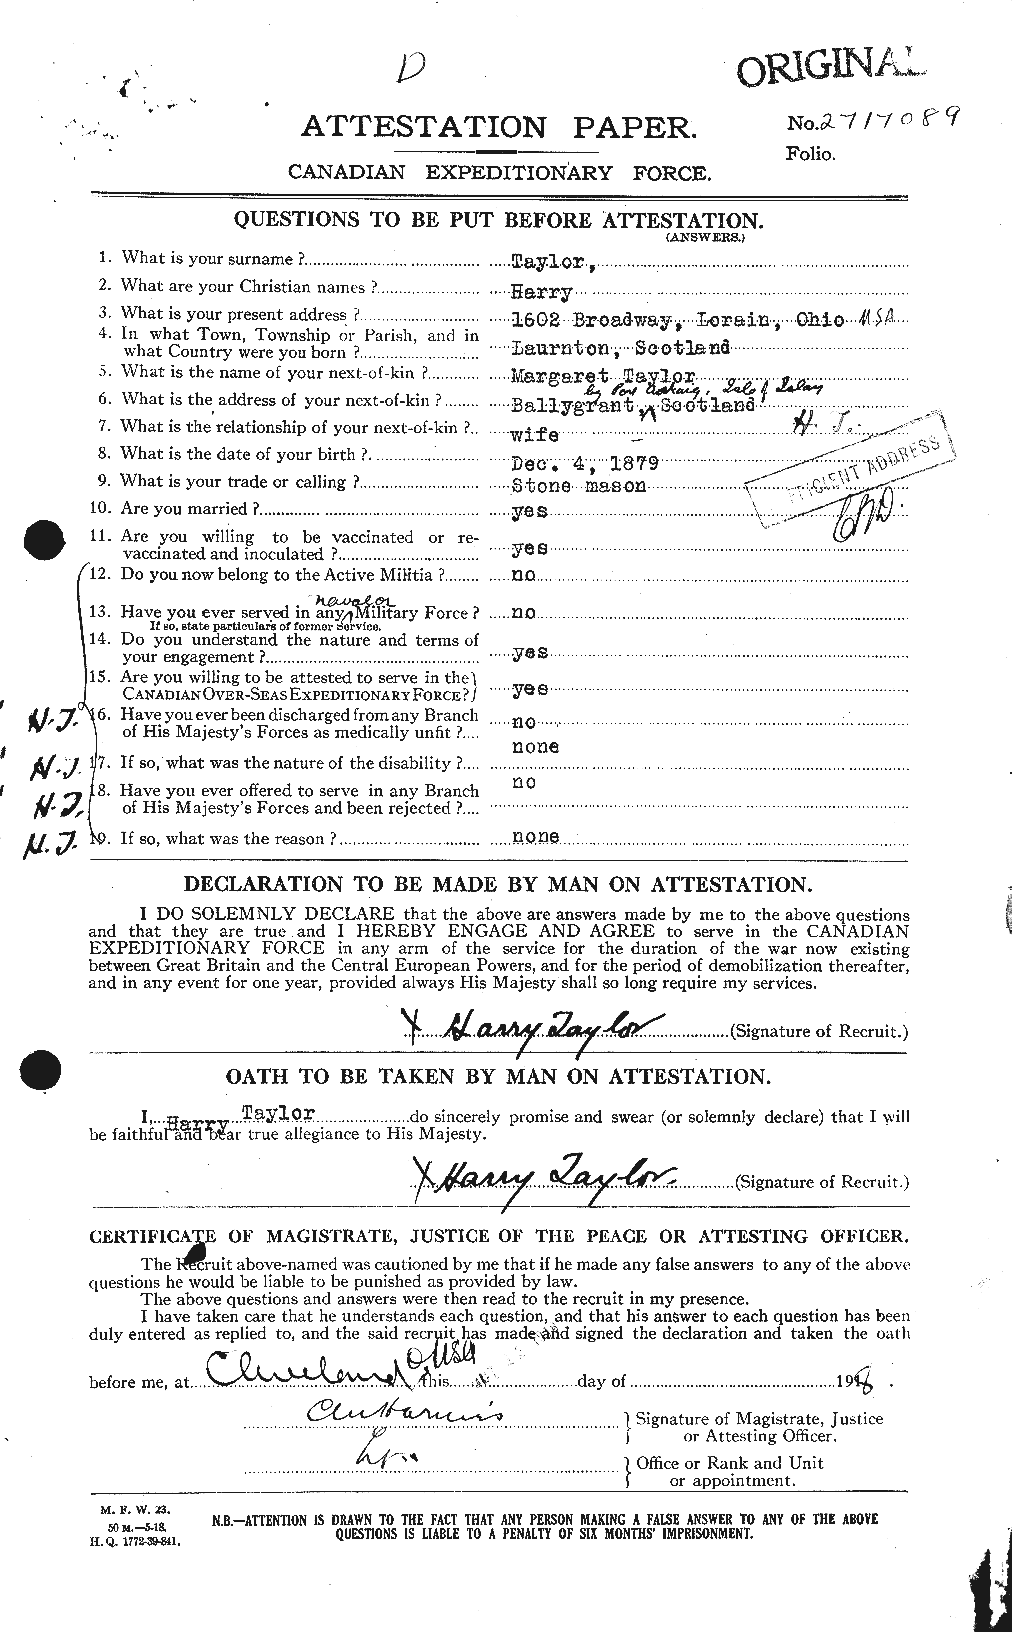 Dossiers du Personnel de la Première Guerre mondiale - CEC 626454a